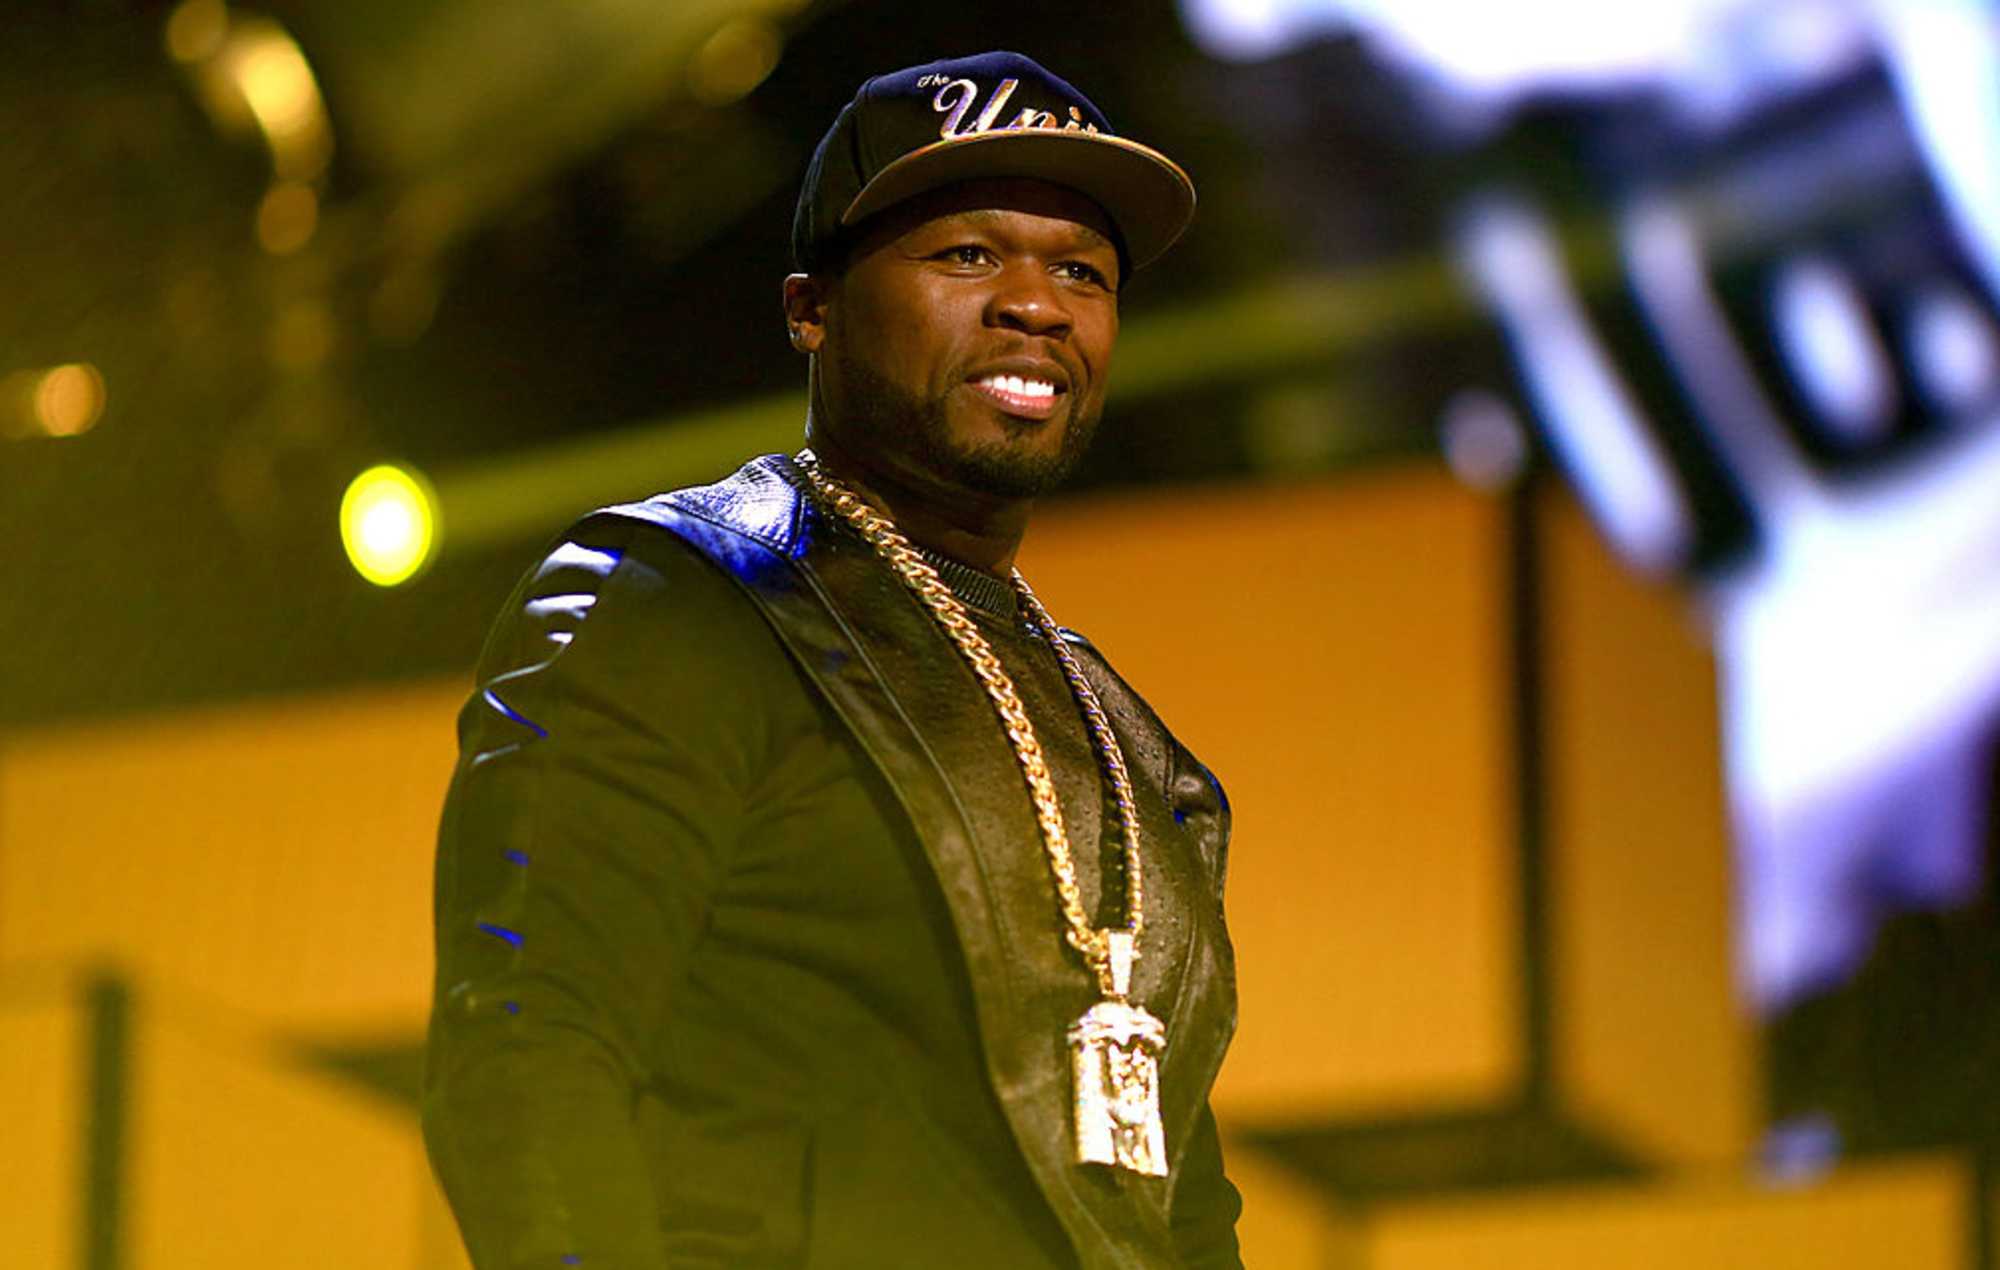 Главные хиты хип-хоп исполнителя 50 Cent 50 Cent: лучшие песни рэп-исполнителя Полный список, описание, клипы смотреть и слушать онлайн бесплатно Хиты 50 Cent, лучшая хип-хоп музыка